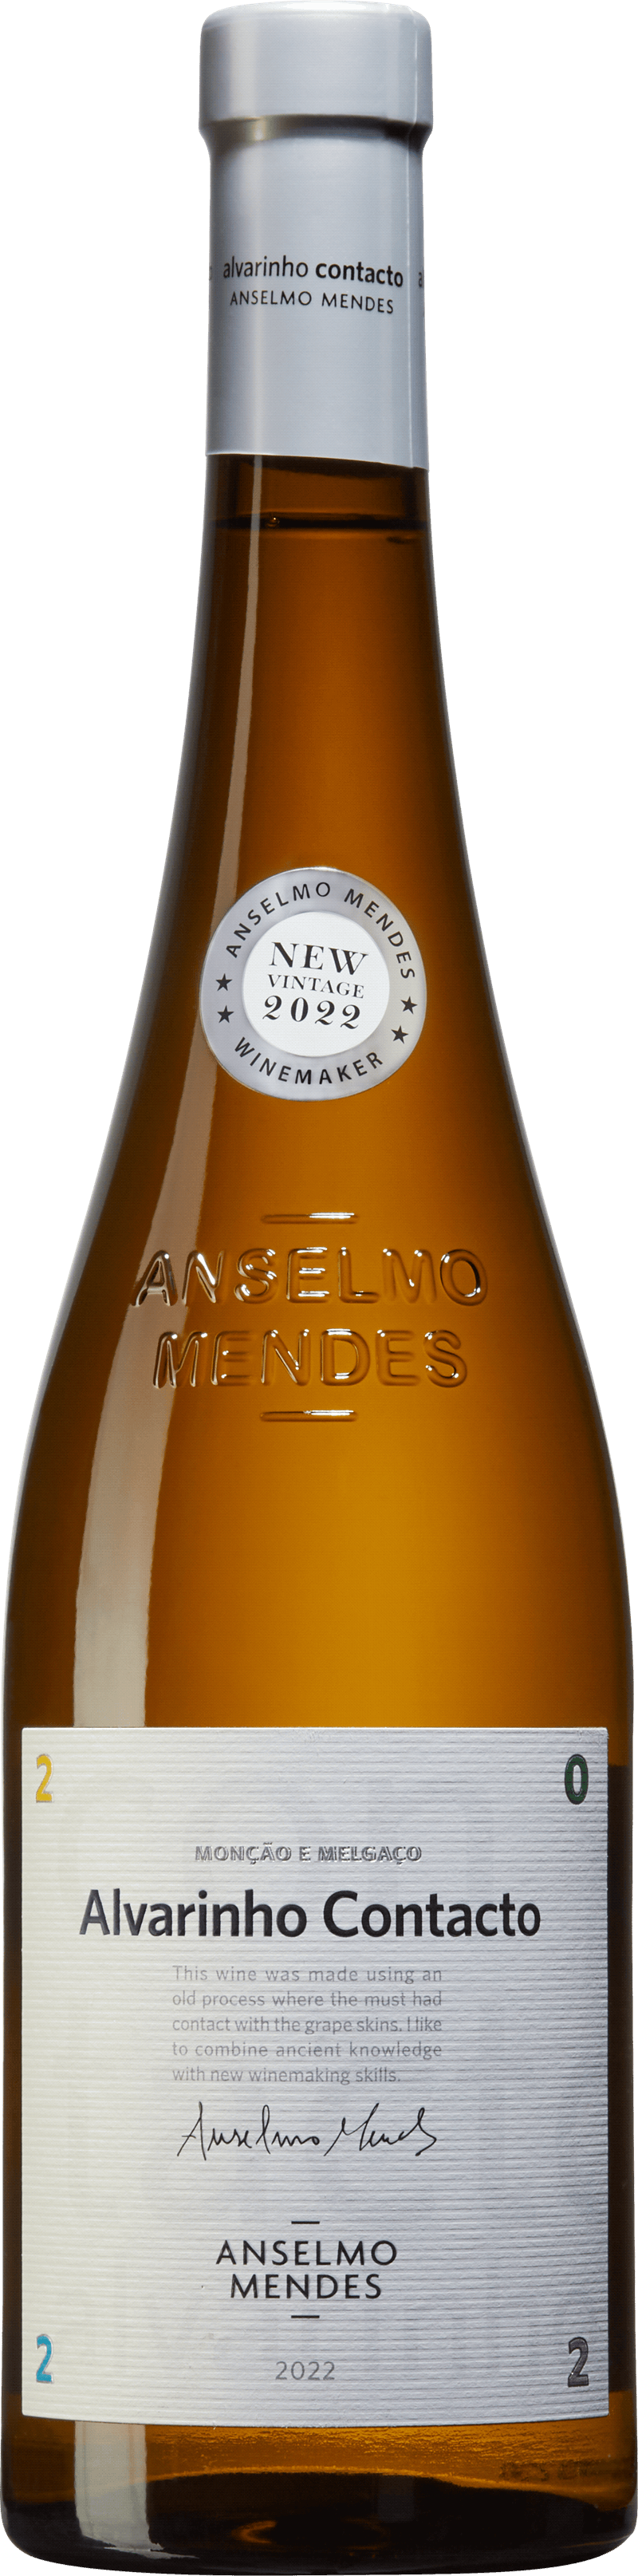 Vitt vin Portugal Anselmo Mendes